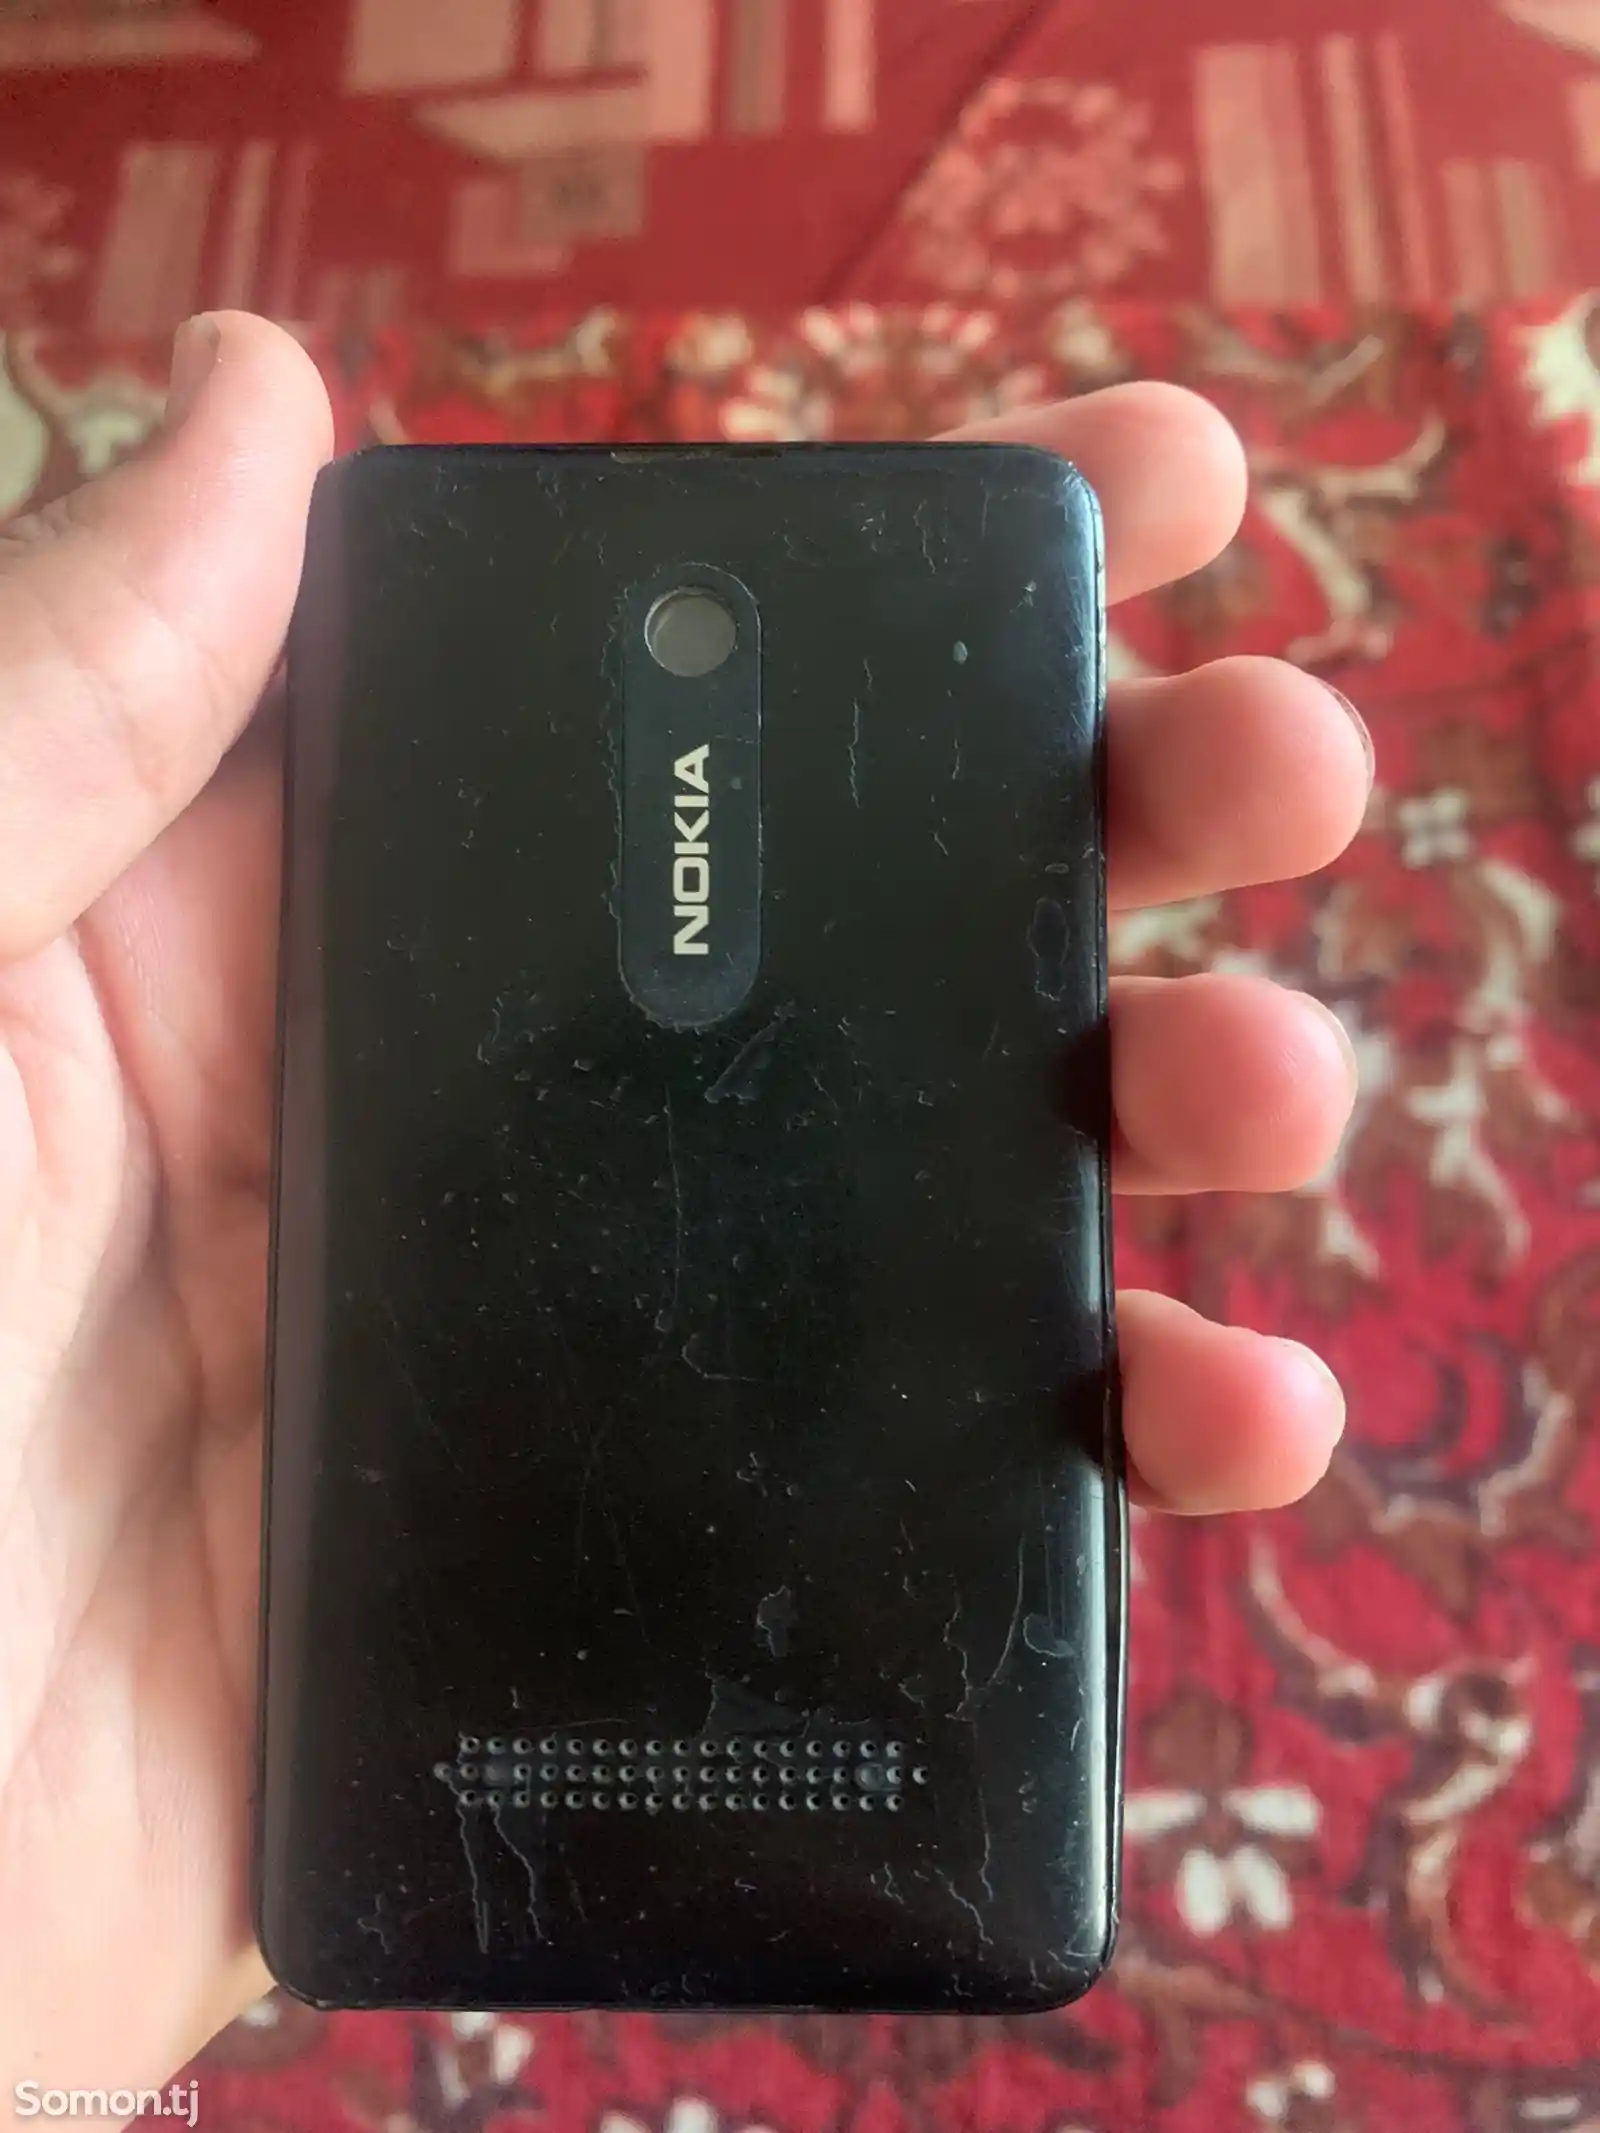 Nokia Asha 210 dual sim-2